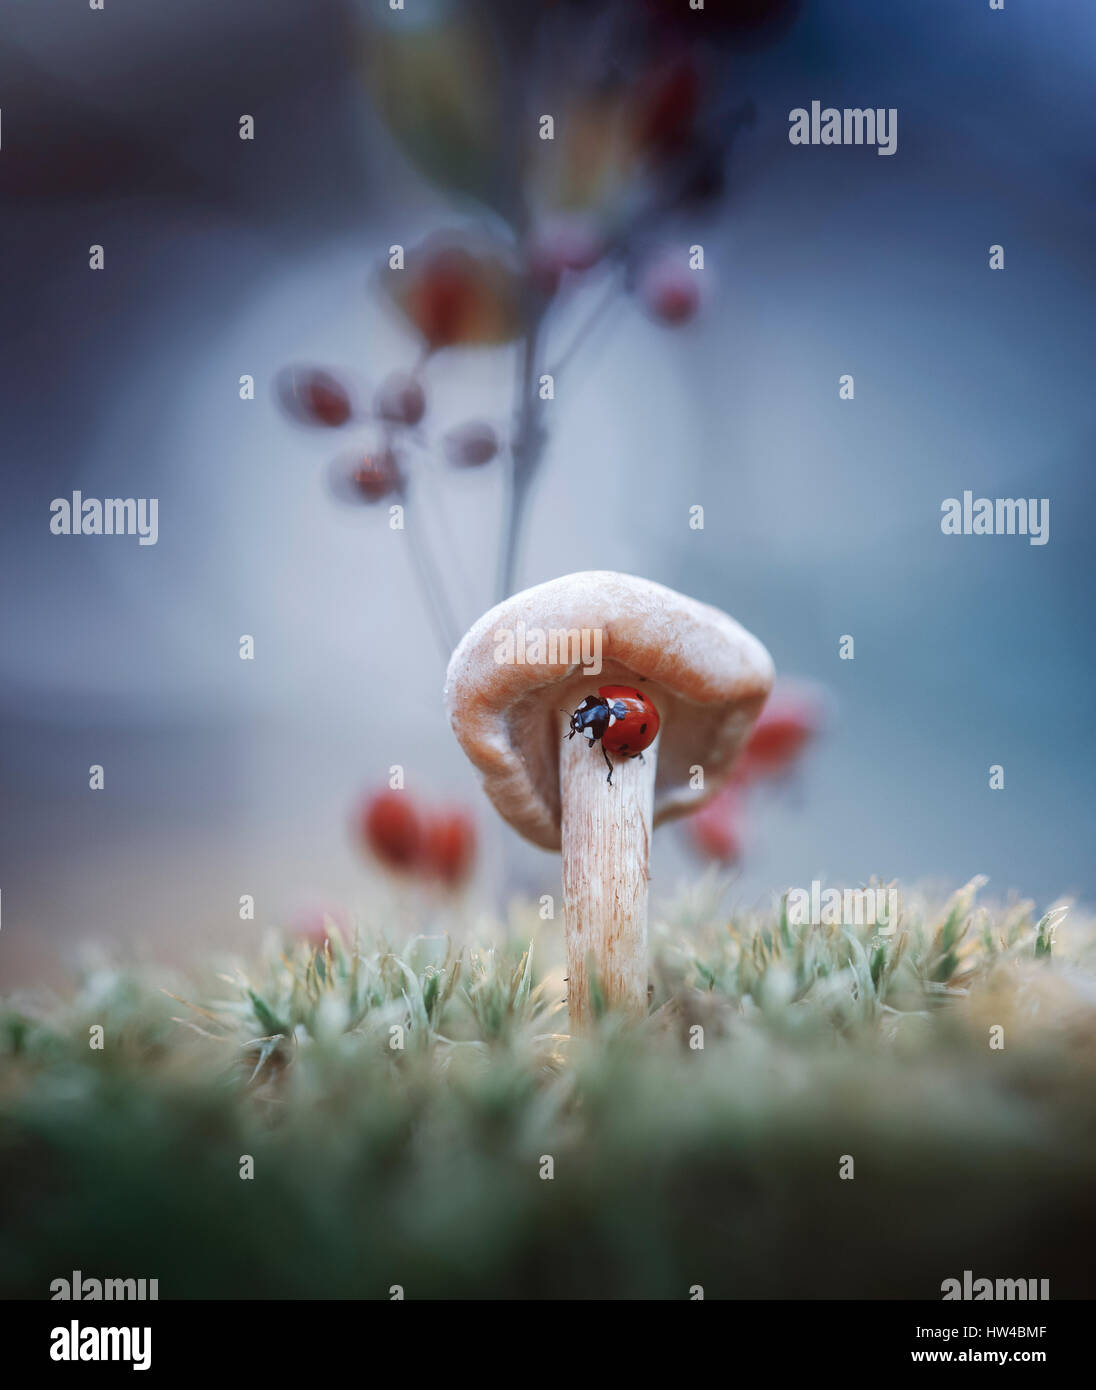 Ladybug on mushroom Stock Photo